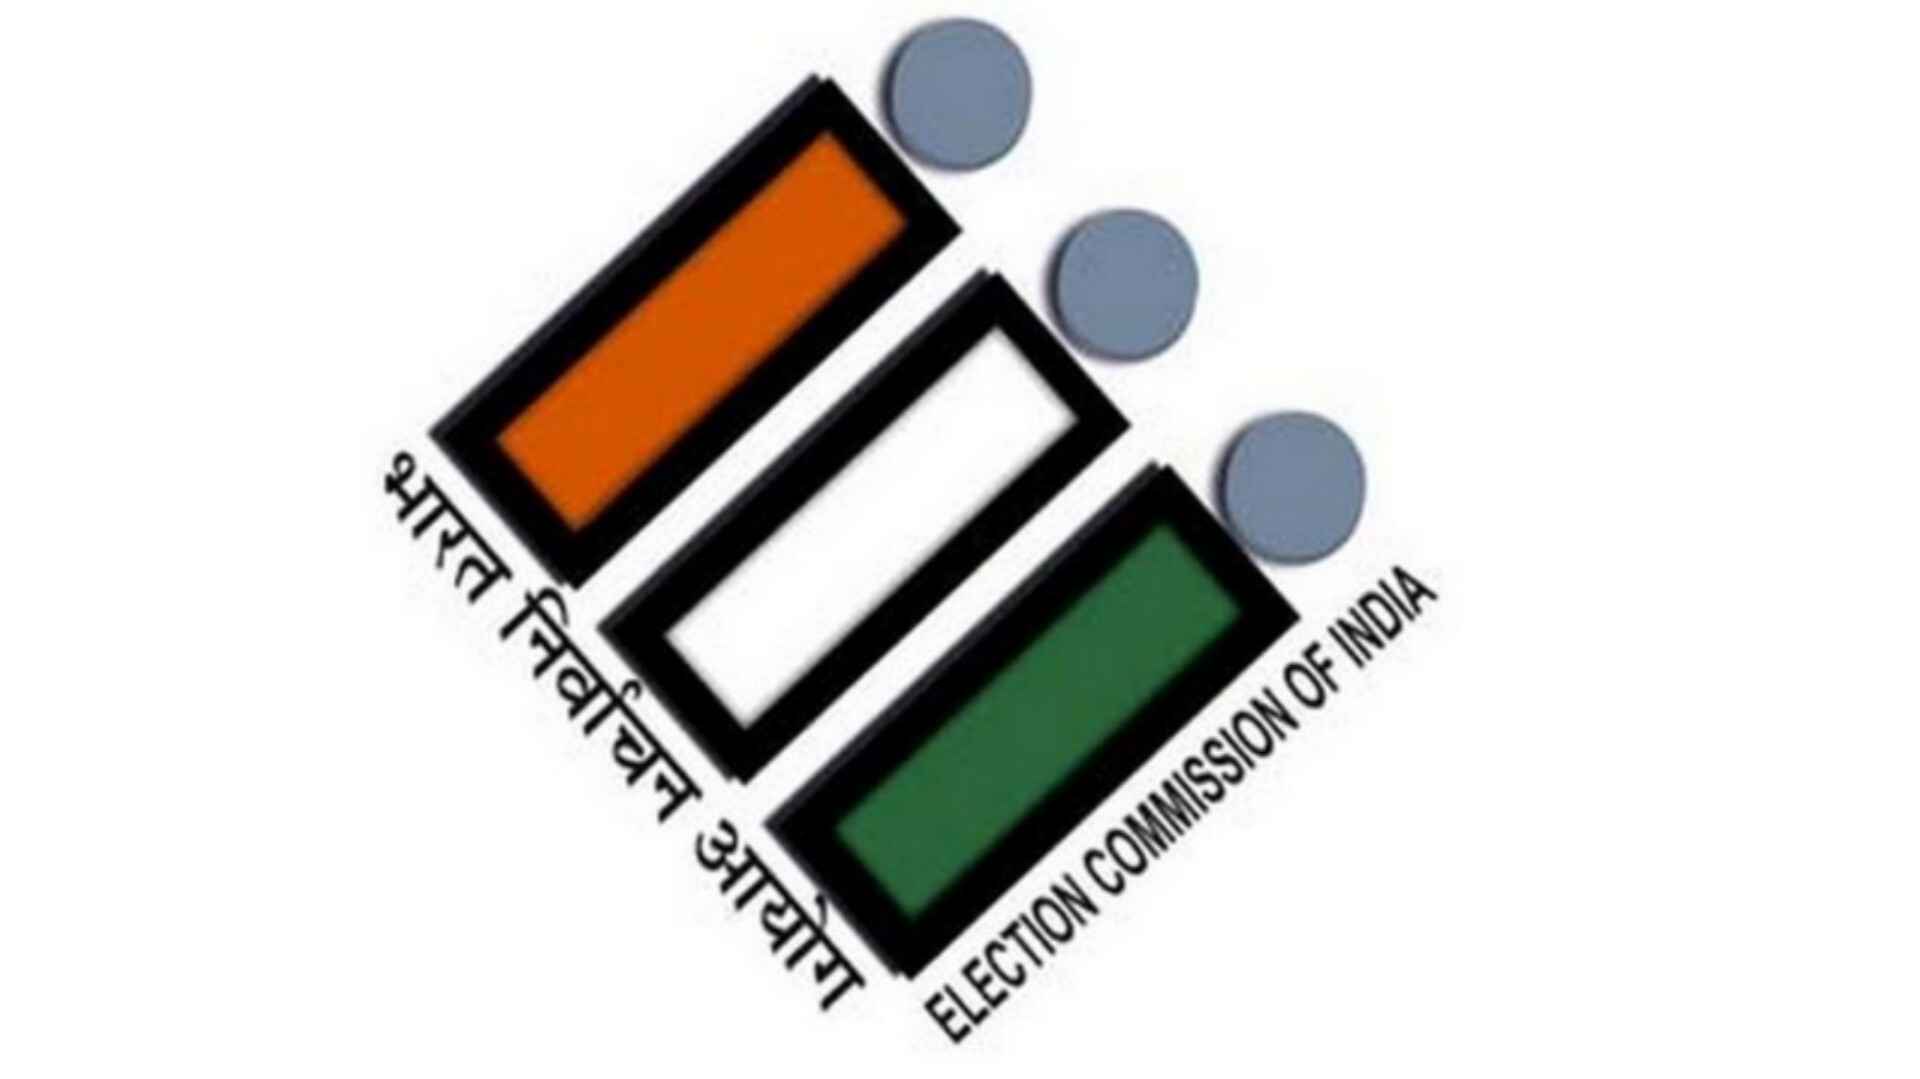 चुनाव आयोग की पश्चिम बंगाल पर विशेष नज़र, इन वाहनों में लगेगा जीपीएस लोकेशन ट्रैकिंग सिस्टम